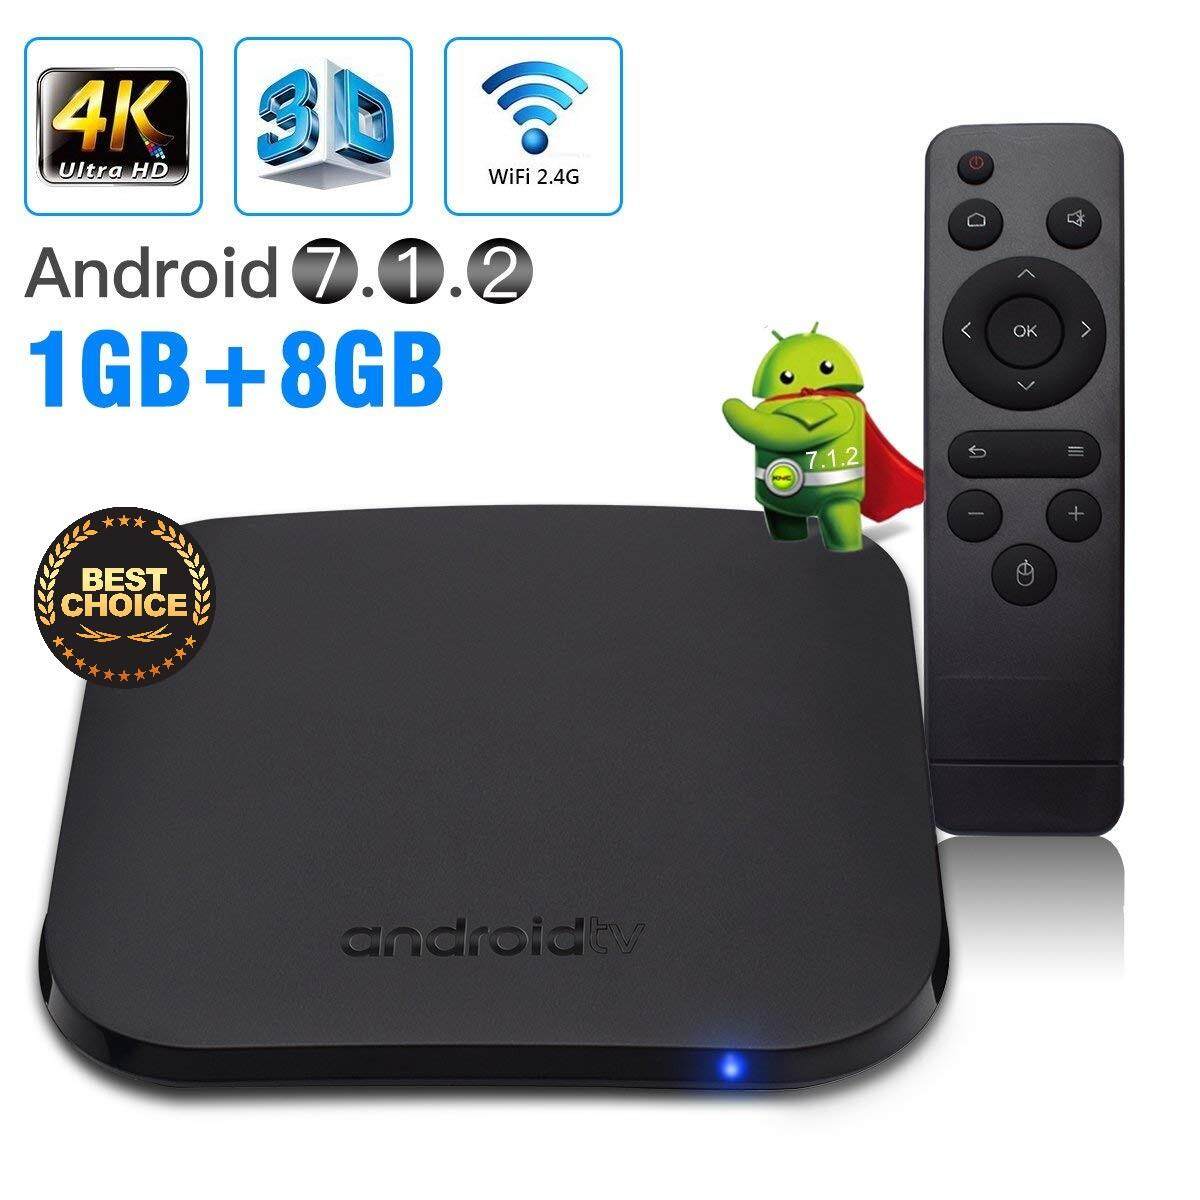  อุดรธานี กล่องดิจิตอลทีวีแอนดรอยด์ M8S PLUS W Quad-Core Nougat TV Box (Amlogic S912 CPU  RAM1GB/ROM8GB  Android 7.1)